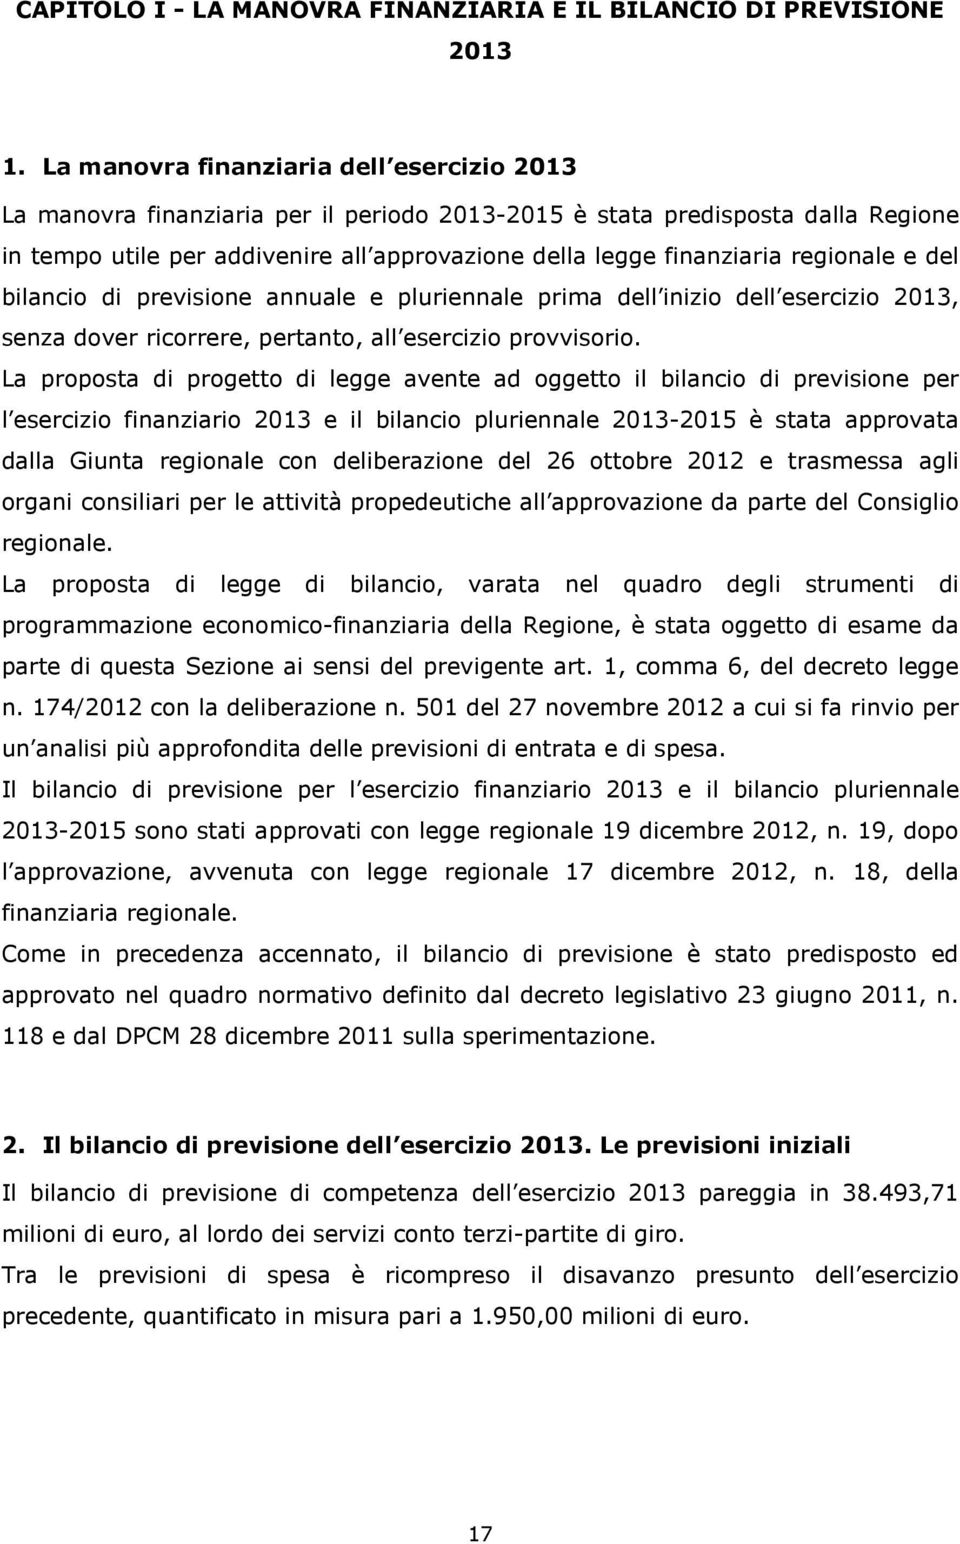 regionale e del bilancio di previsione annuale e pluriennale prima dell inizio dell esercizio 2013, senza dover ricorrere, pertanto, all esercizio provvisorio.